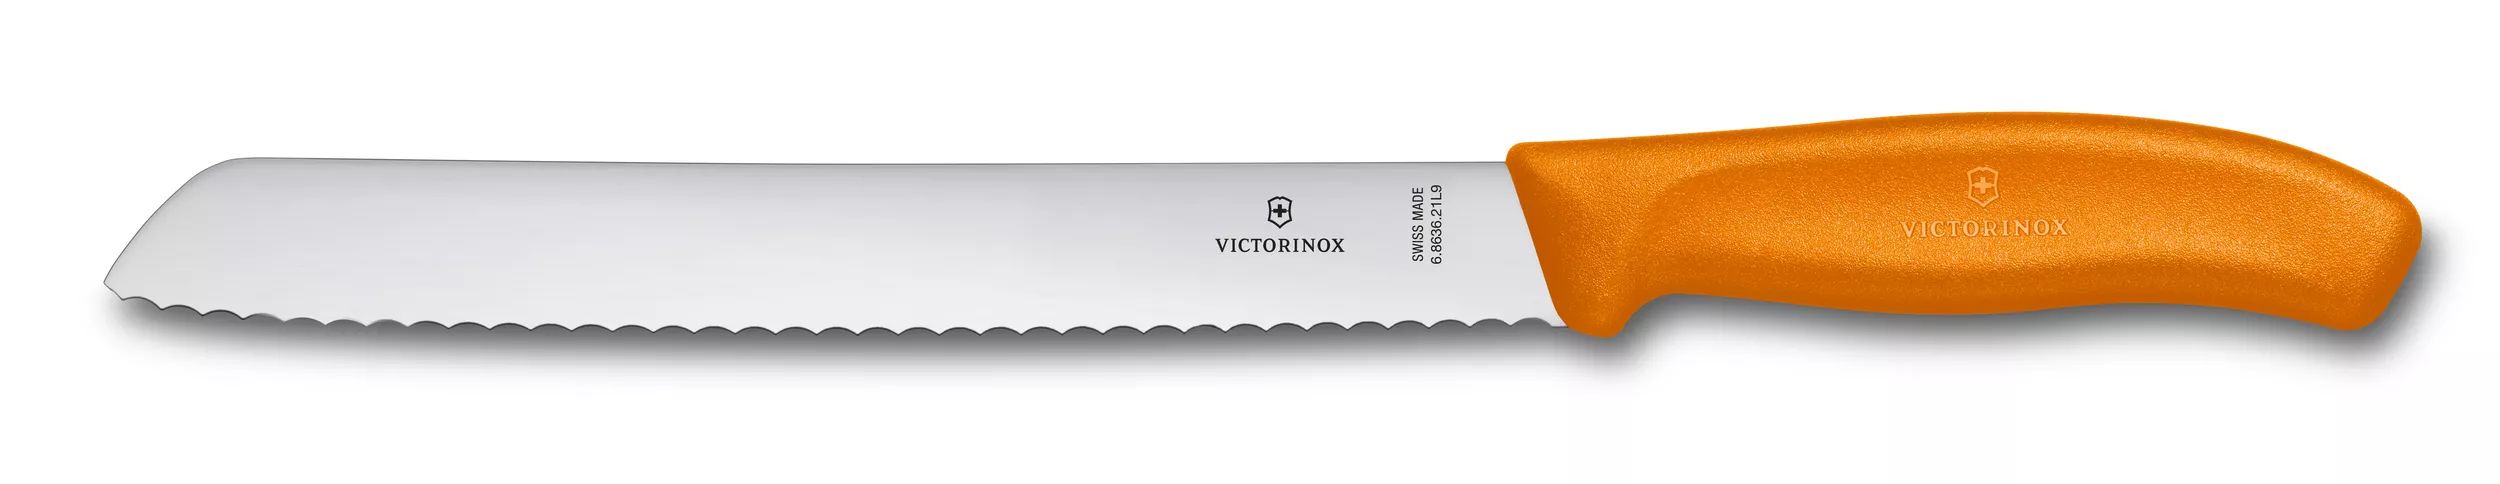 Swiss Classic 麵包刀-6.8636.21L9B